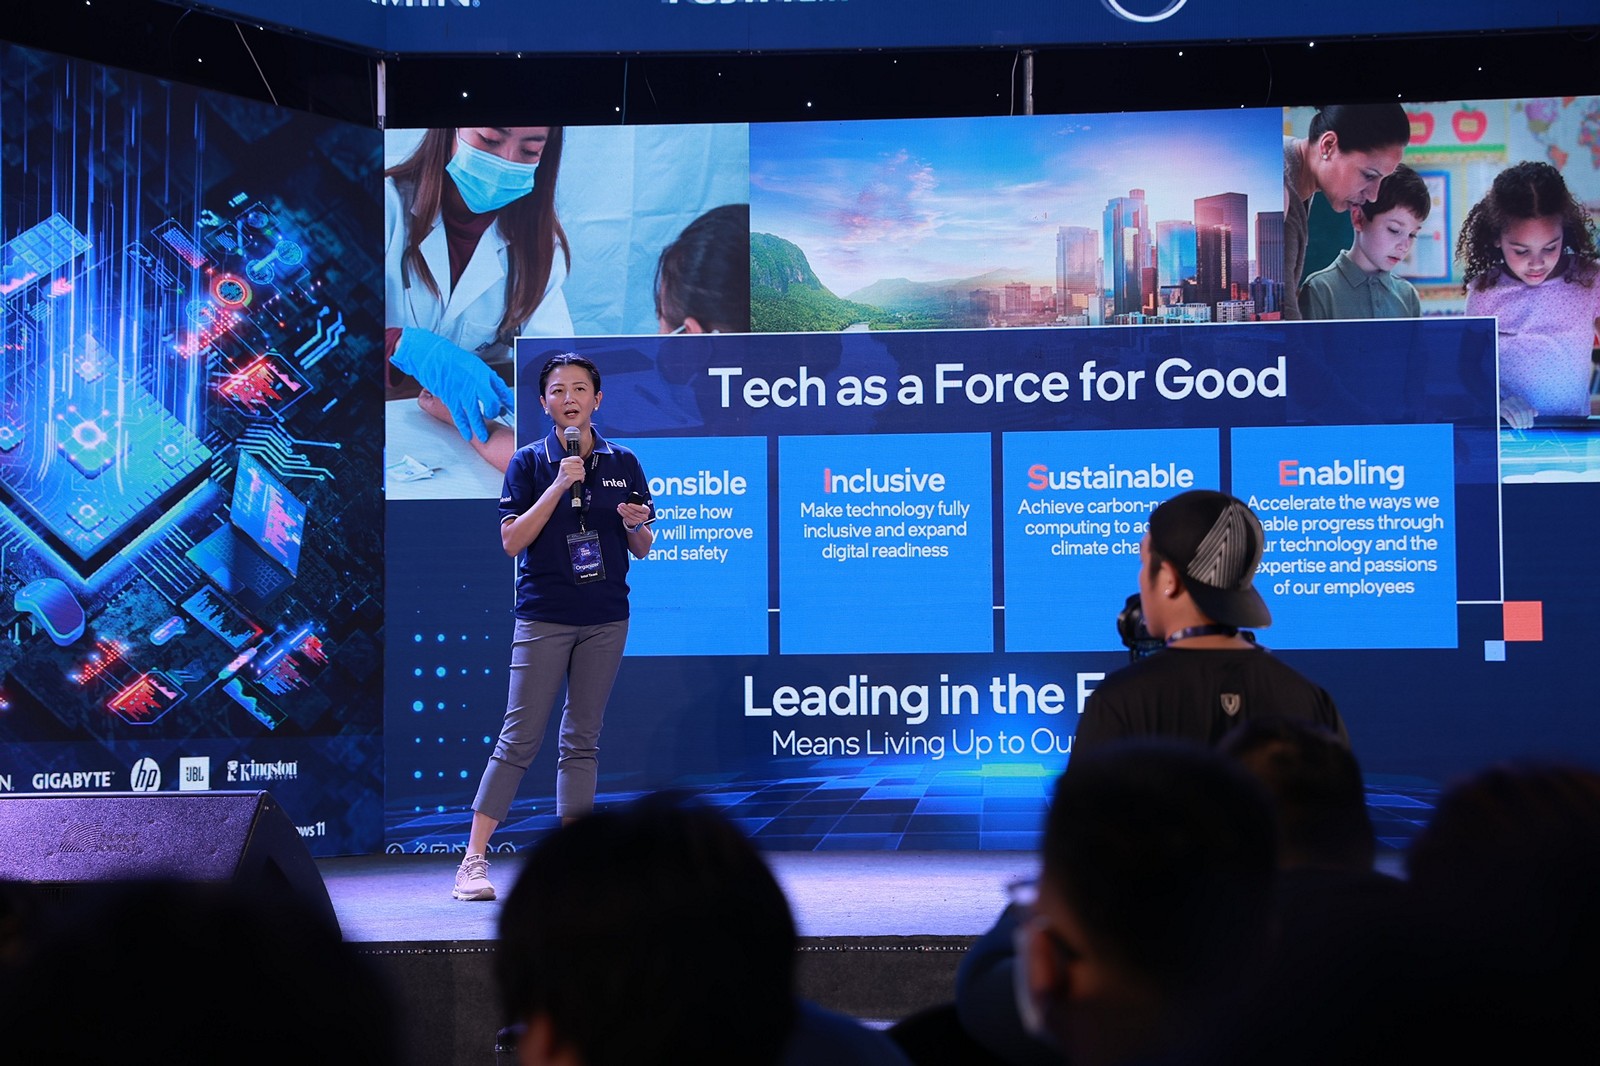 Intel chính thức khai mạc triển lãm IT và gaming INTEL TECH CAMP đầu tiên tại Việt Nam